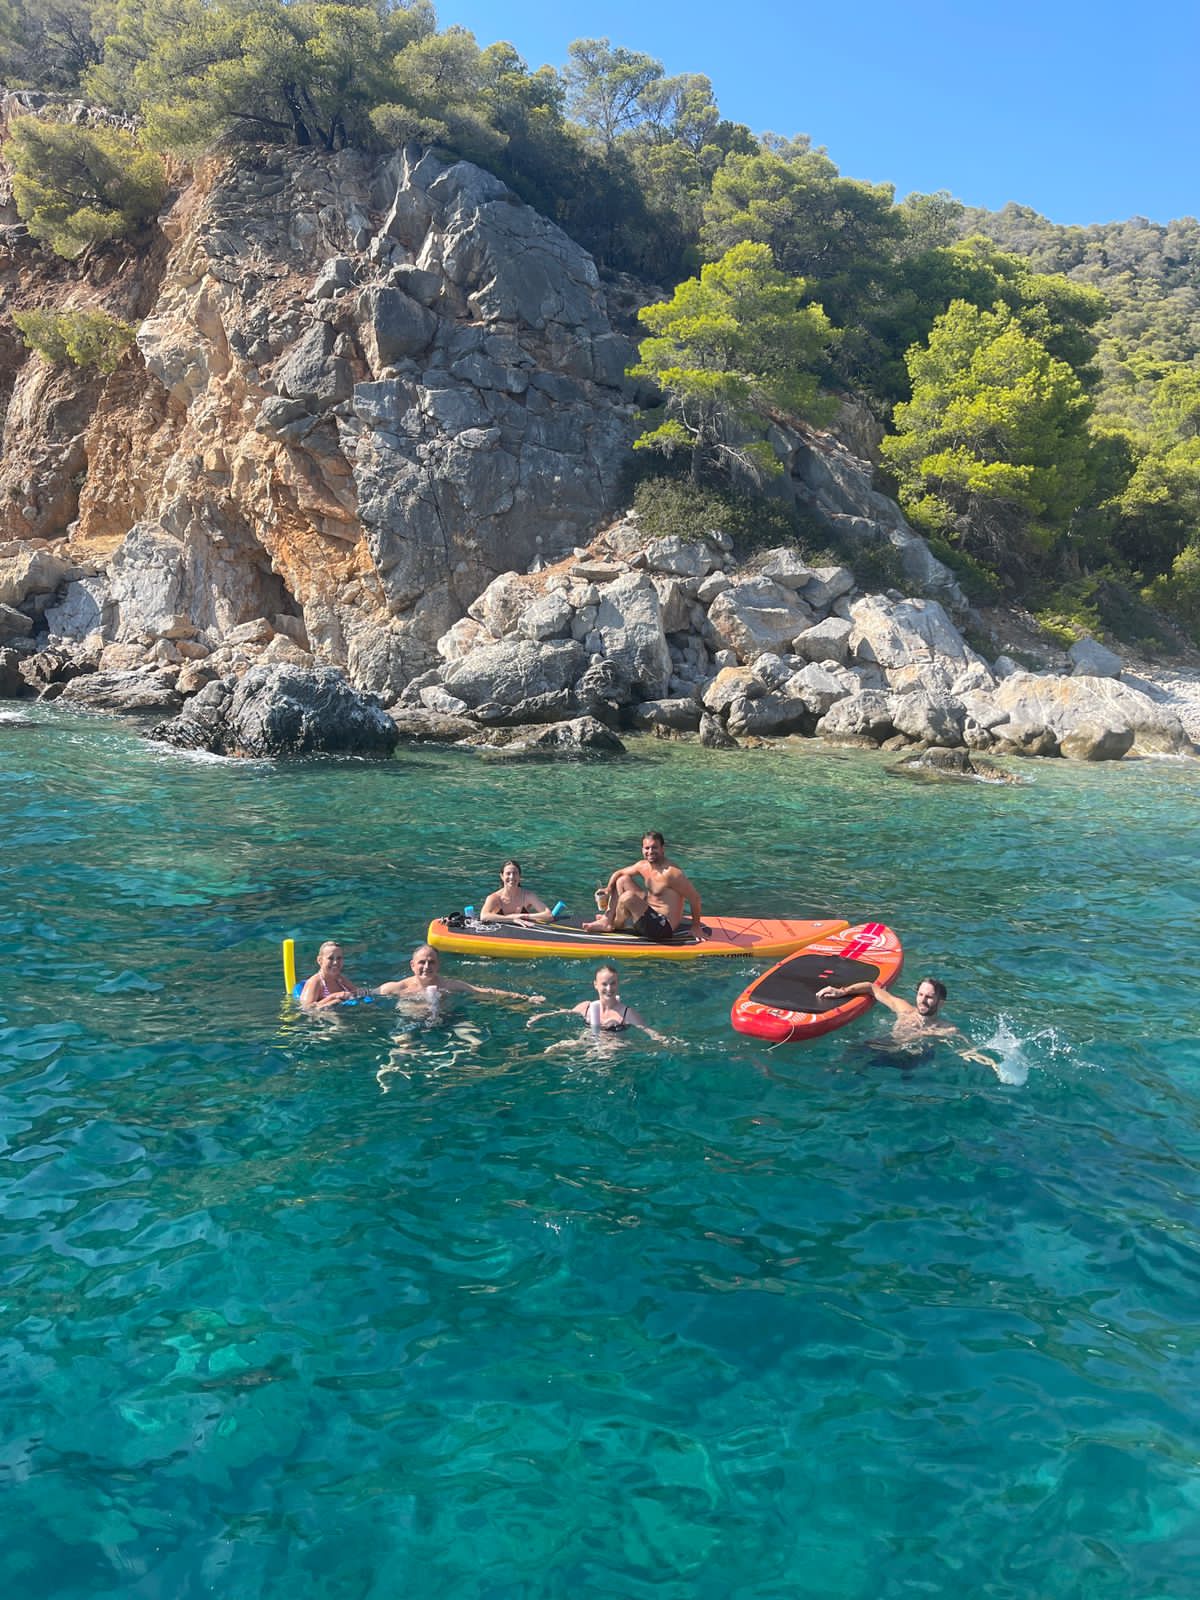 Mehrere Menschen baden während eines Segelurlaubs vergnügt im Mittelmeer in türkisem Wasser vor einem Felsen. Sie haben ein Kayaks, ein SUP und eine Schwimmnudel dabei.